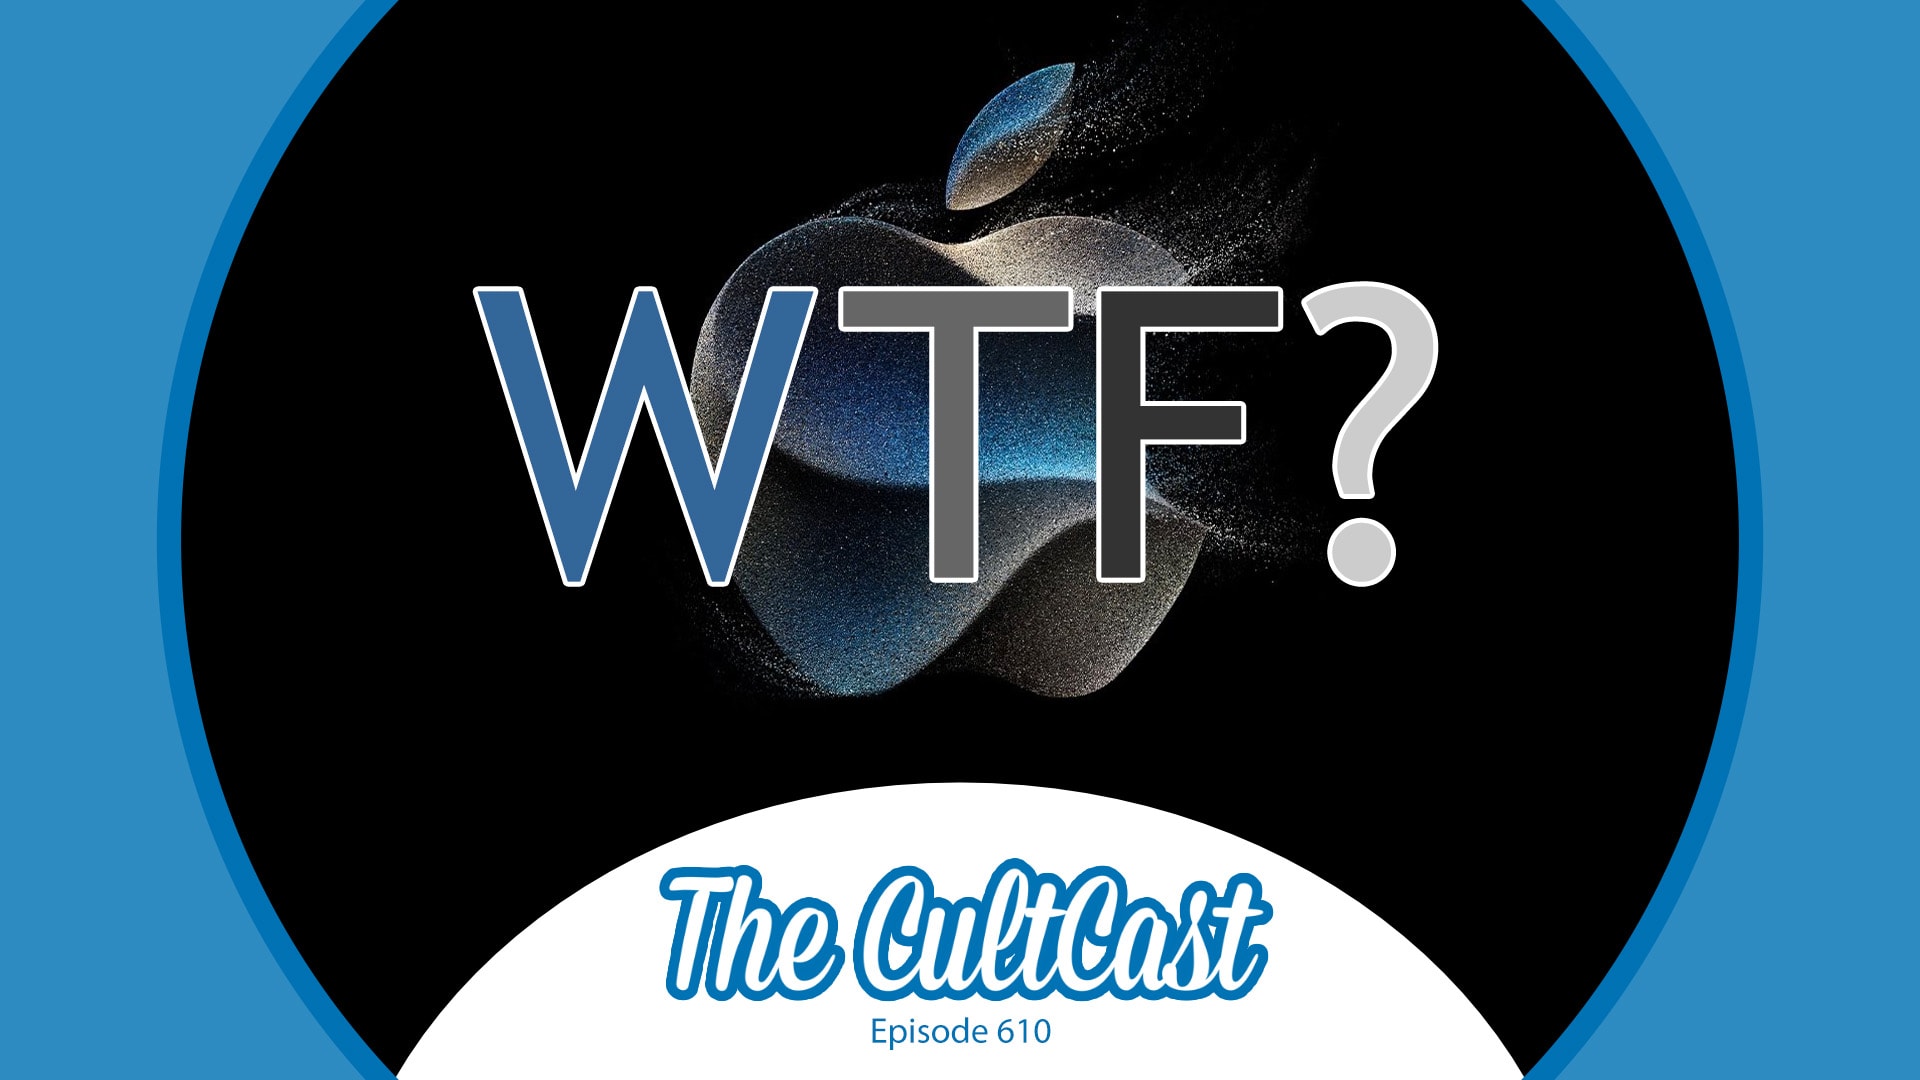 L’evento “Wonderlust” porterà iPhone degni di lussuria? [The CultCast]